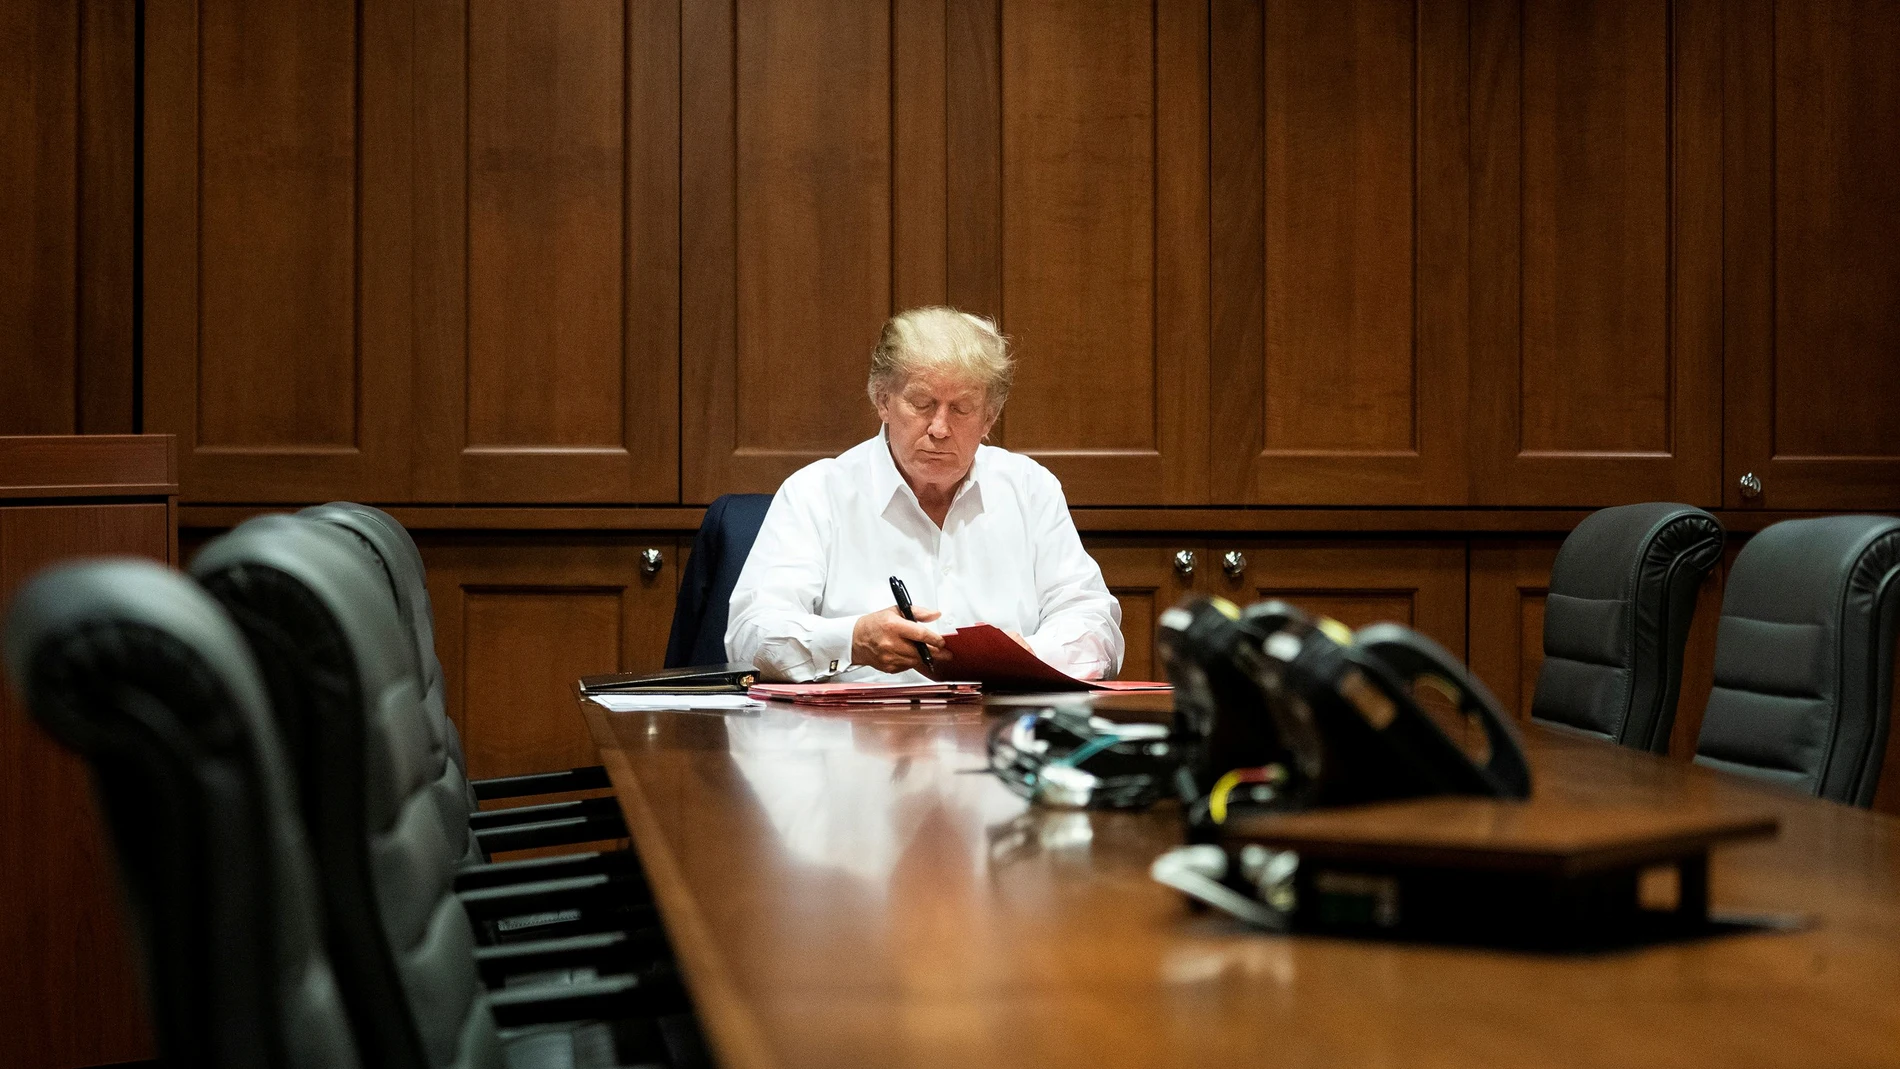 Donald Trump, en una reunión mientras recibe tratamiento por COVID-19